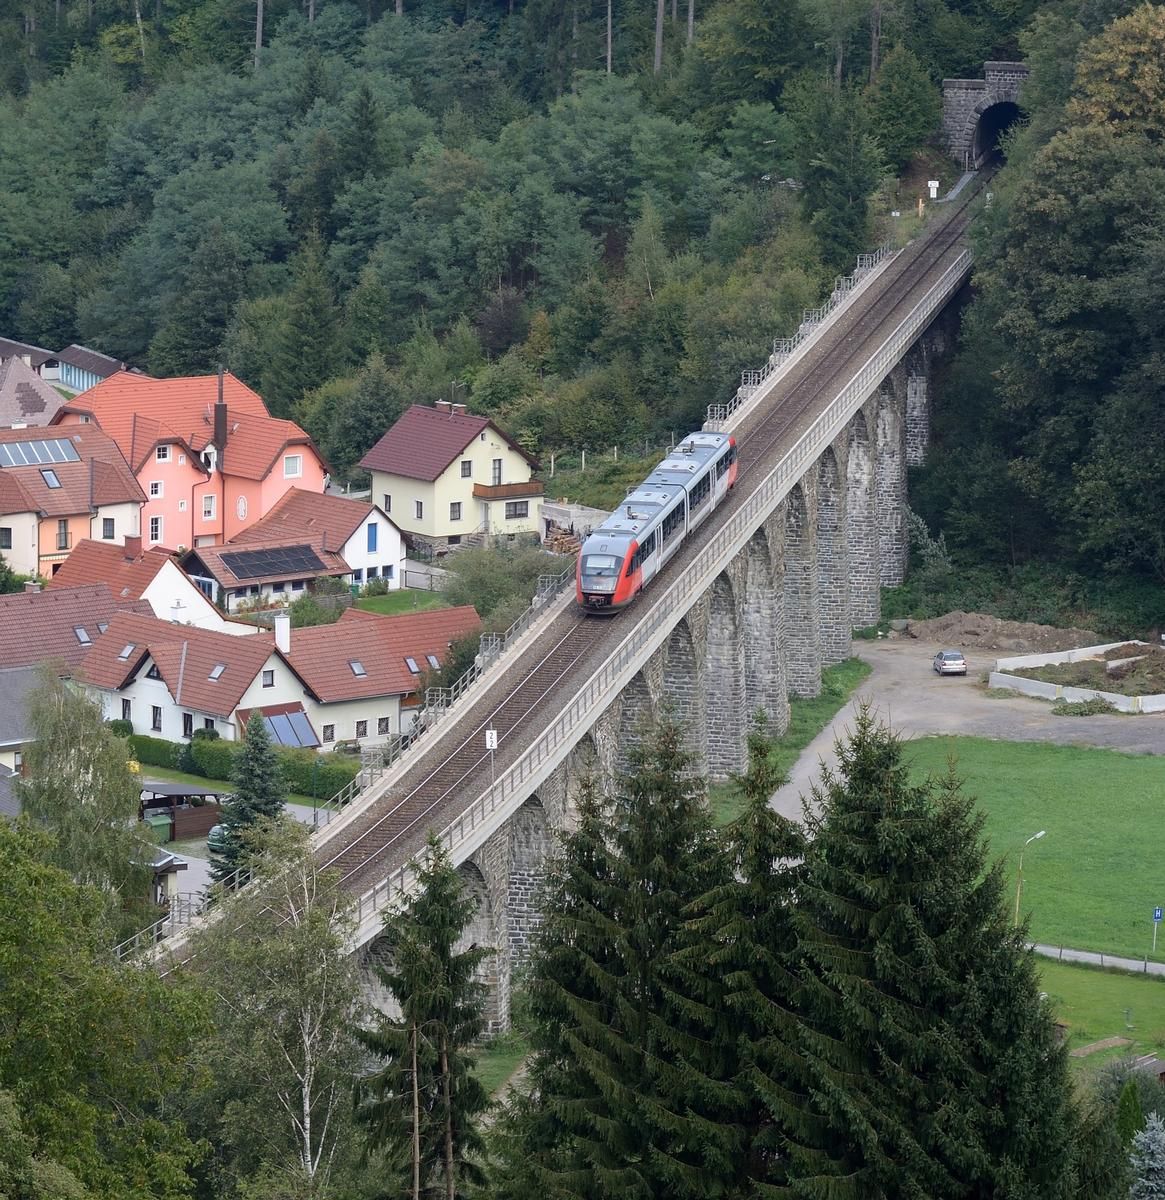 Murtalviadukt der Wechselbahn, Querung der B54, Verbindung von Gerichtsbergtunnel und Sambergtunnel Murtalviadukt der Wechselbahn, Querung der B54, Verbindung von Gerichtsbergtunnel und Sambergtunnel